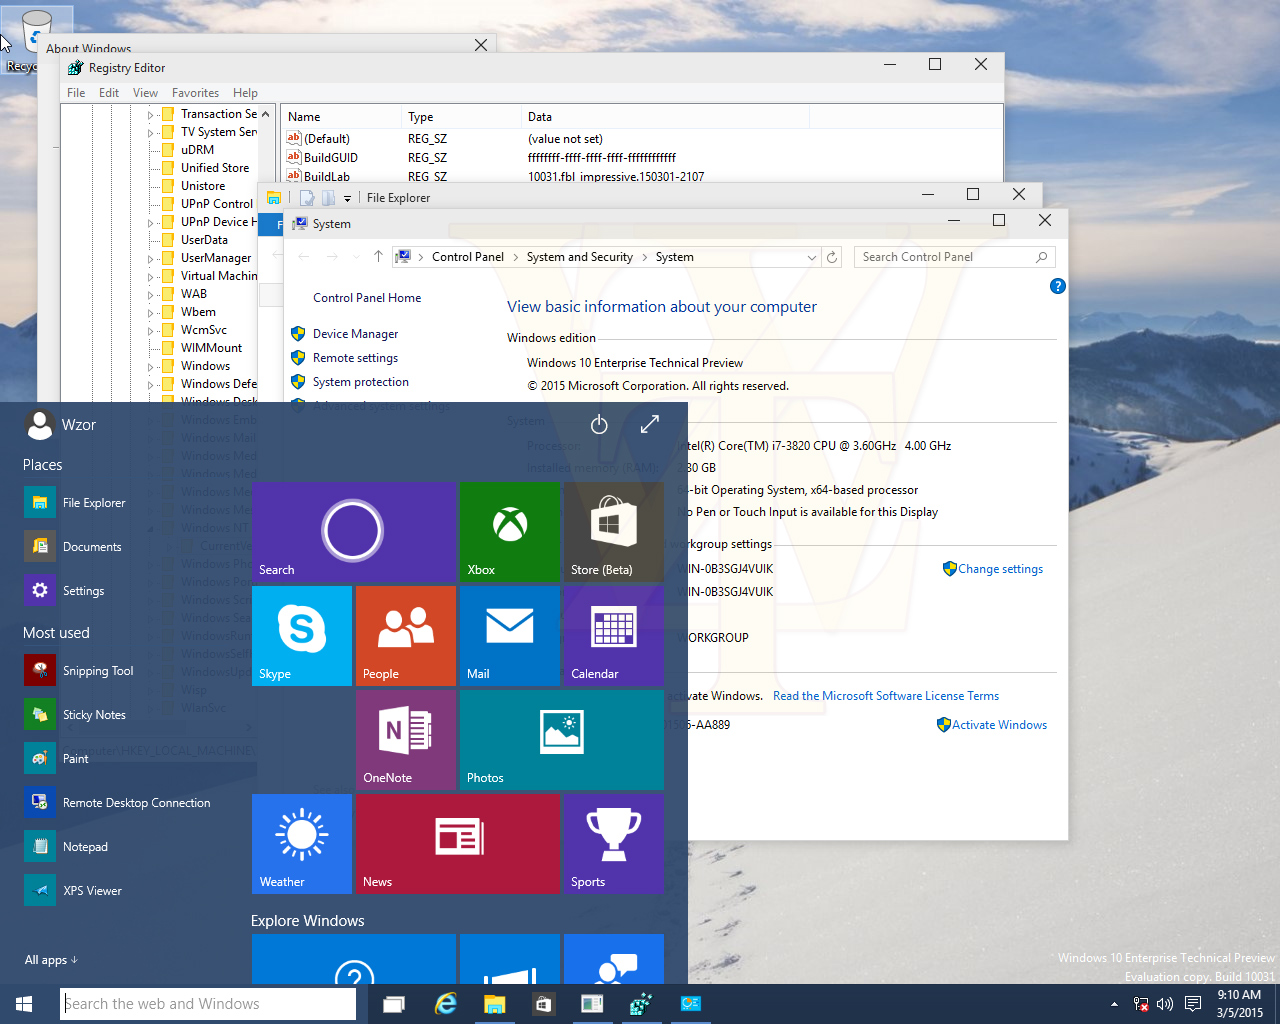 Microsoft đã giới thiệu một menu Start mới cho Windows 10, với các gạch mới phù hợp với chủ đề. Với tính năng này, người dùng có thể tùy chỉnh giao diện menu Start một cách linh hoạt và tạo nên một phong cách độc đáo riêng. Nhấp chuột vào hình ảnh để khám phá thêm tính năng này.